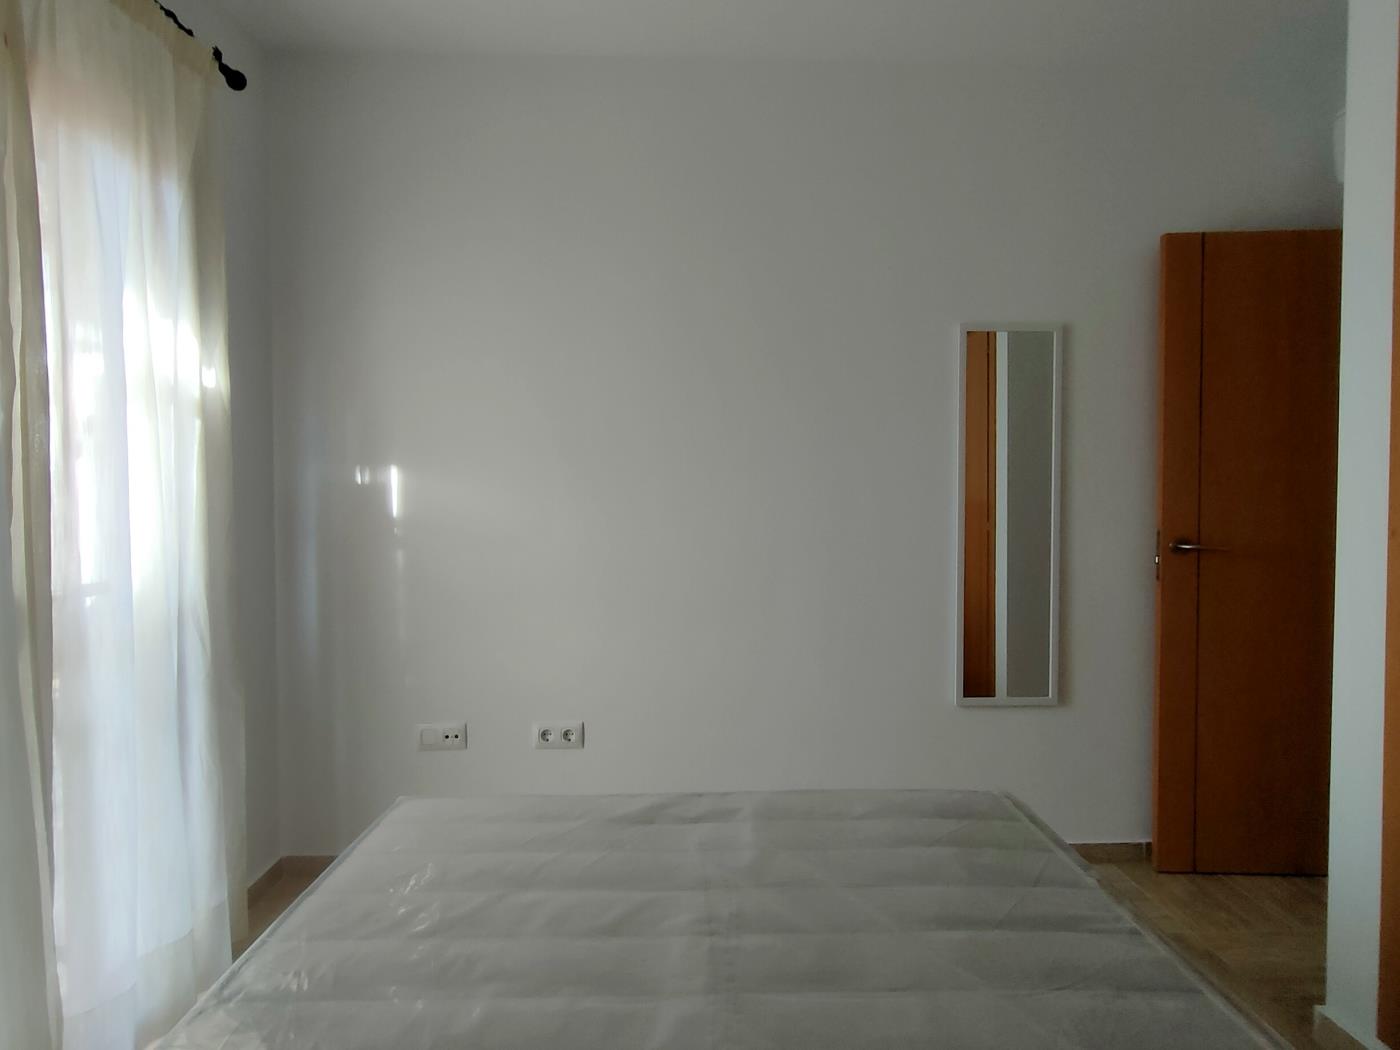 Ref. C4. Two bedroom first floor apartment in Chiclana de la frontera